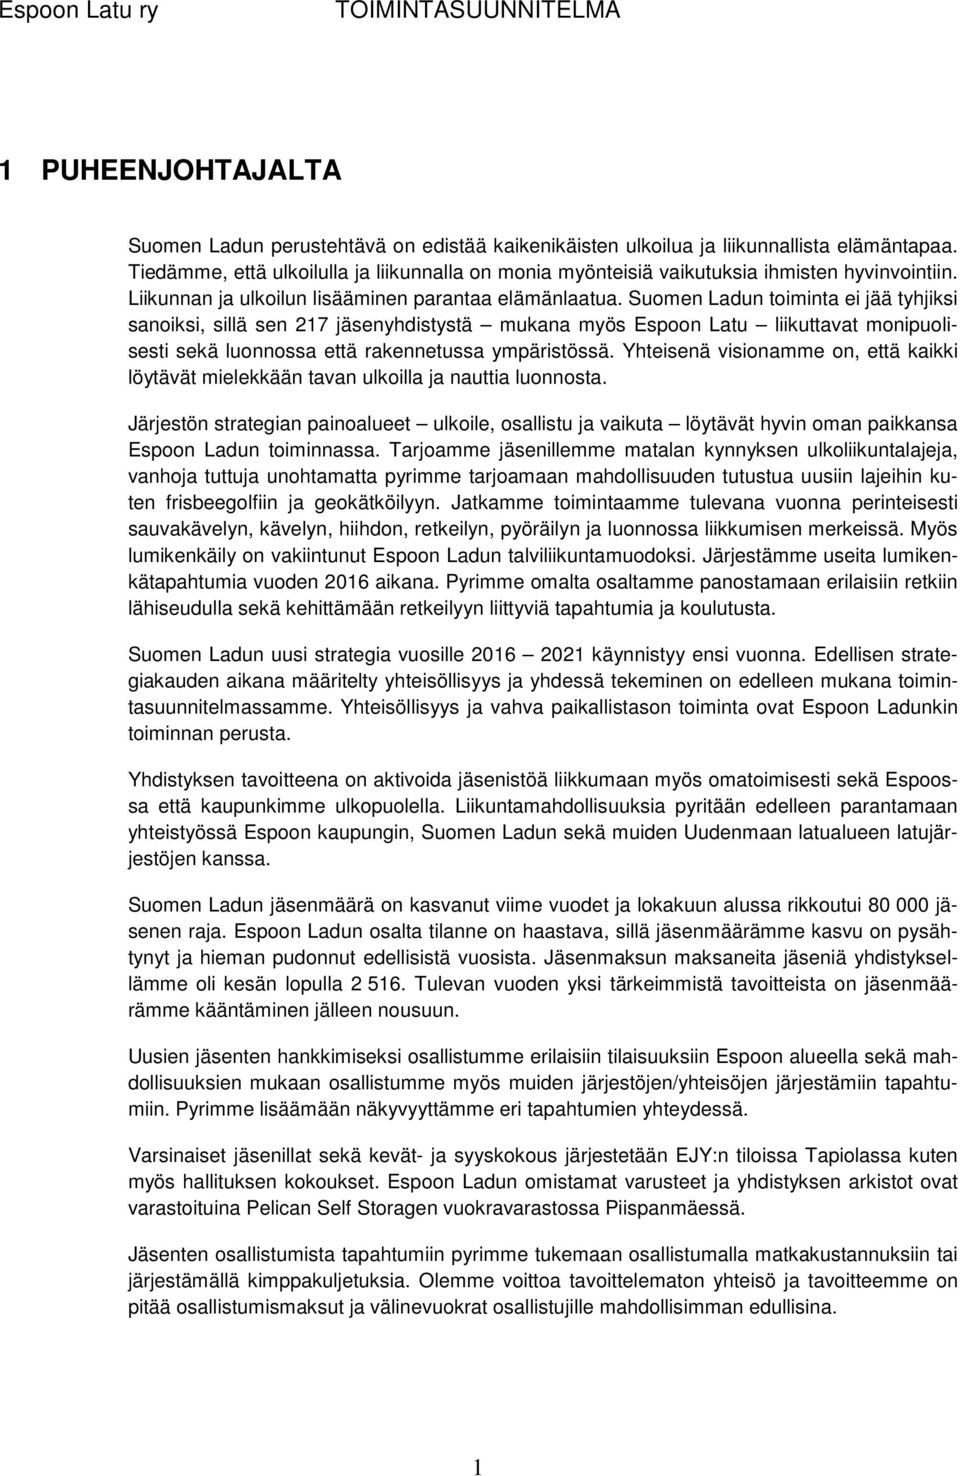 Suomen Ladun toiminta ei jää tyhjiksi sanoiksi, sillä sen 217 jäsenyhdistystä mukana myös Espoon Latu liikuttavat monipuolisesti sekä luonnossa että rakennetussa ympäristössä.